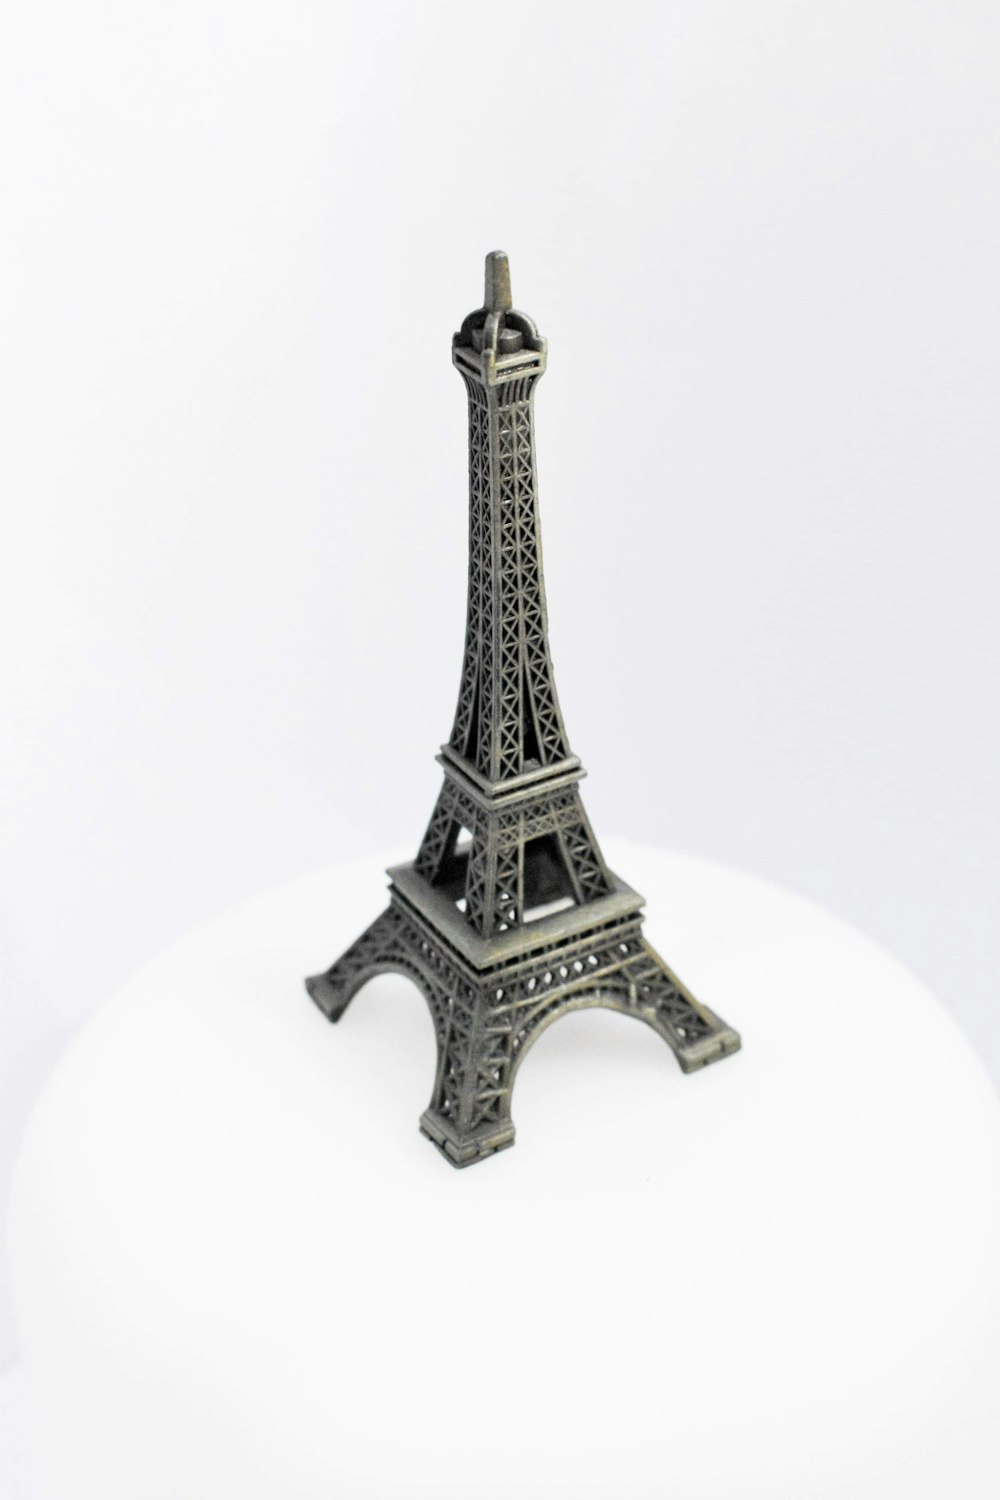 Modell des Eiffelturms